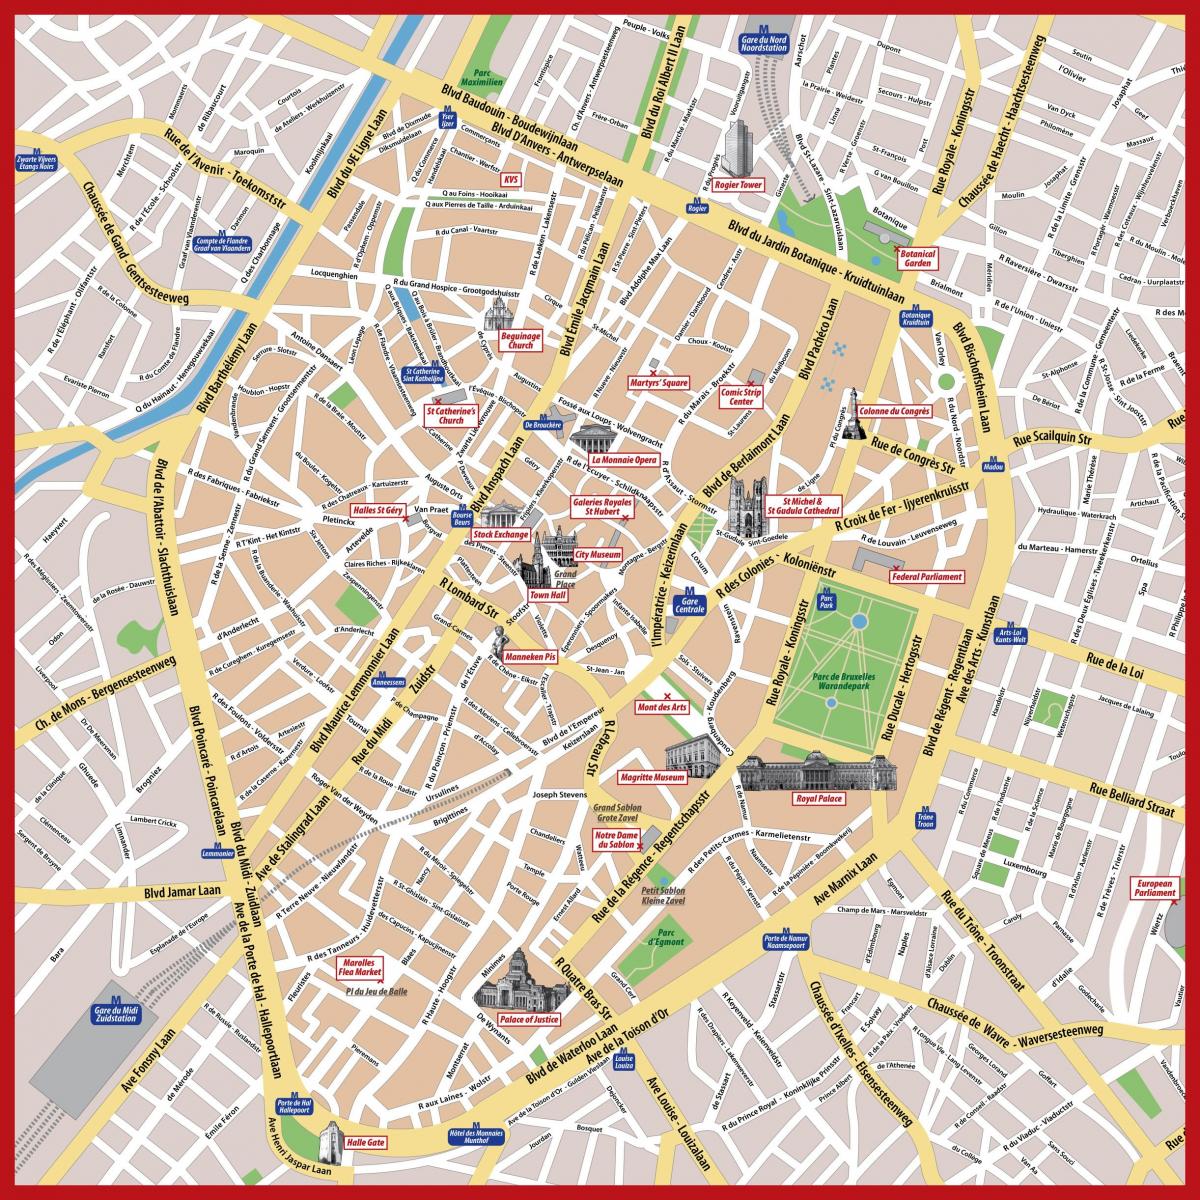 Bruksela mapa miasta w formacie PDF